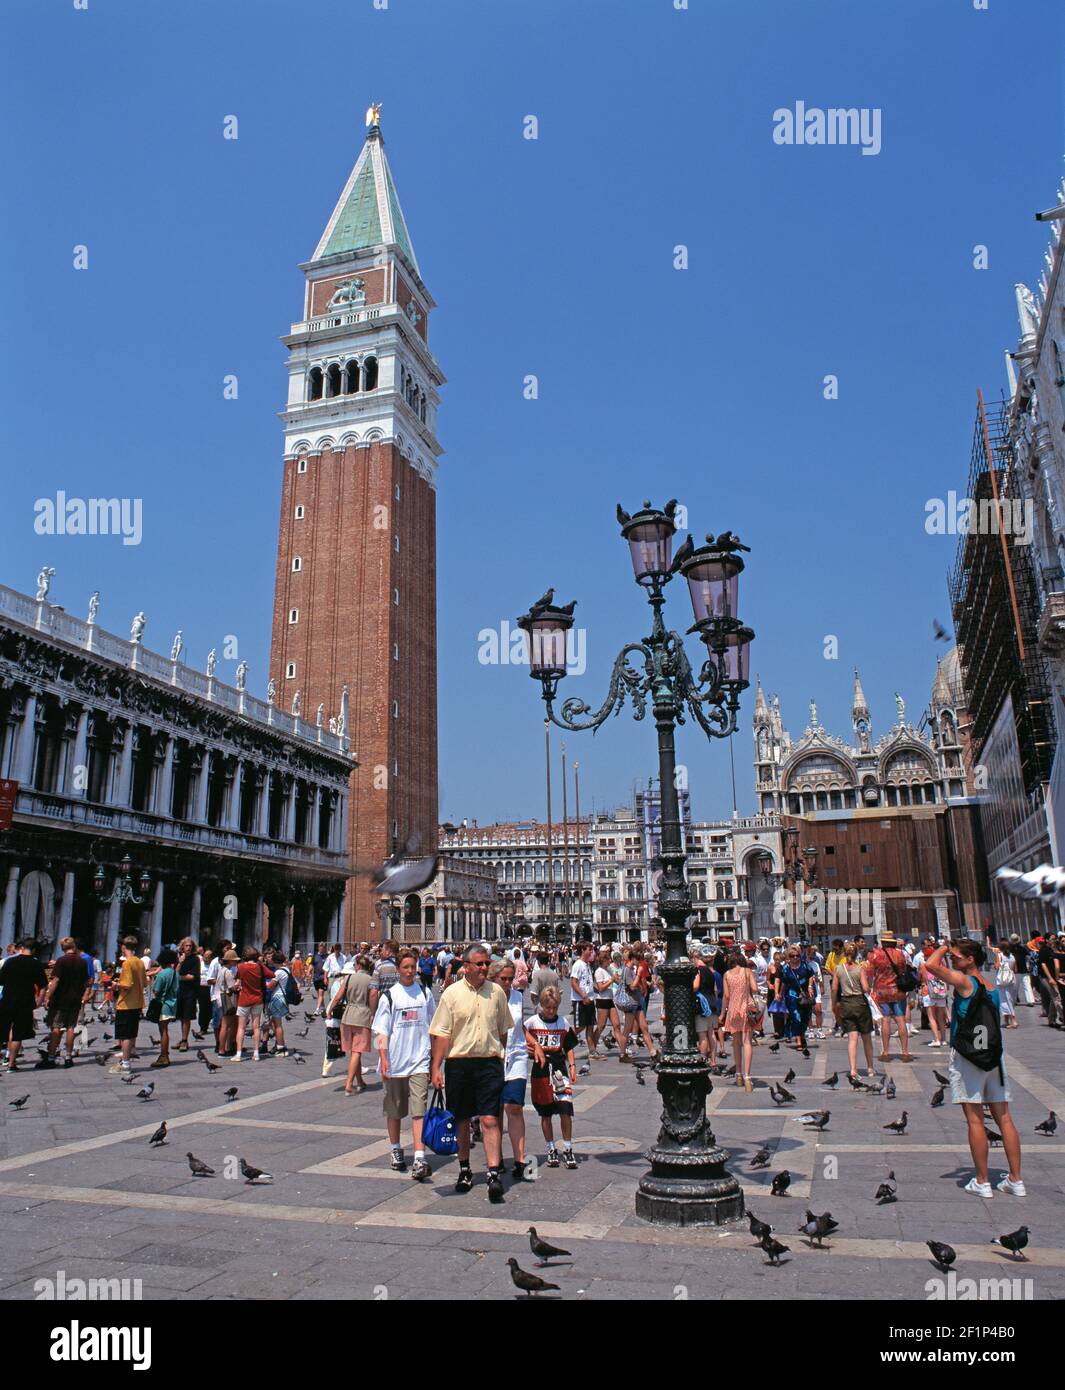 Italie. Venise. Le Campanile avec la foule sur la place Saint-Marc. Banque D'Images